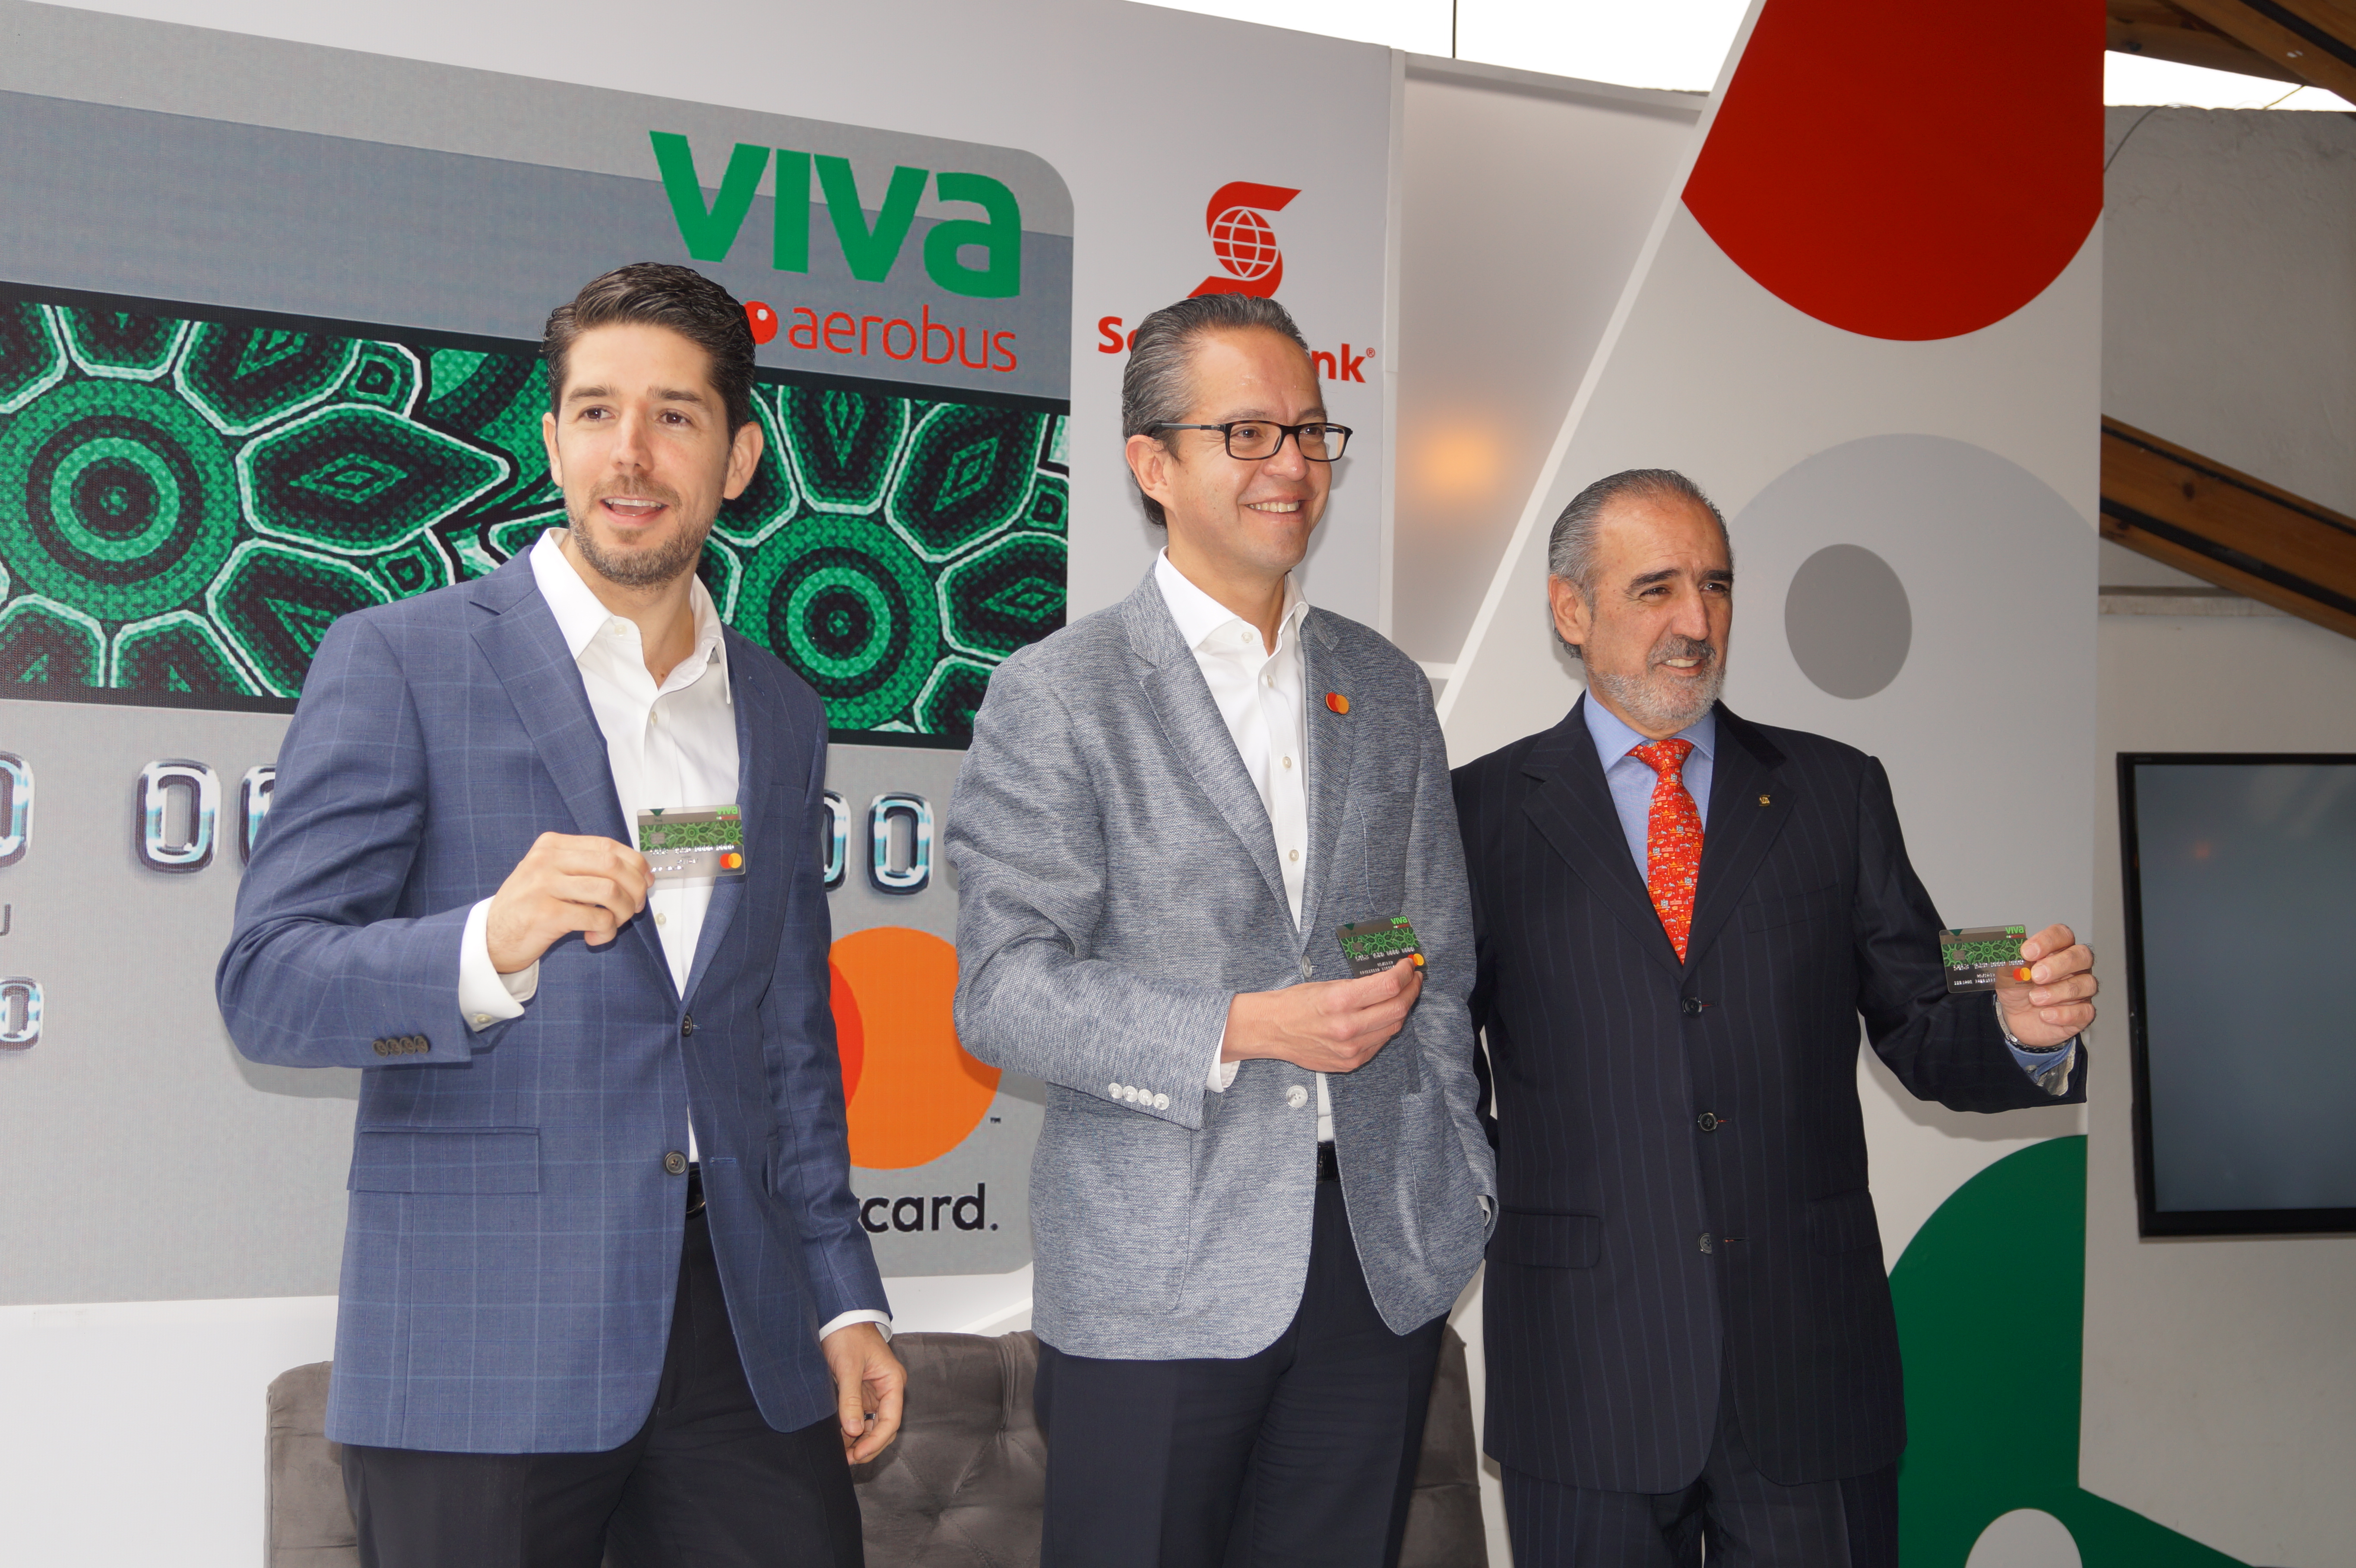 Viva Aerobus, Scotiabank y Mastercard, lanzan nueva tarjeta de crédito ‘Viva’